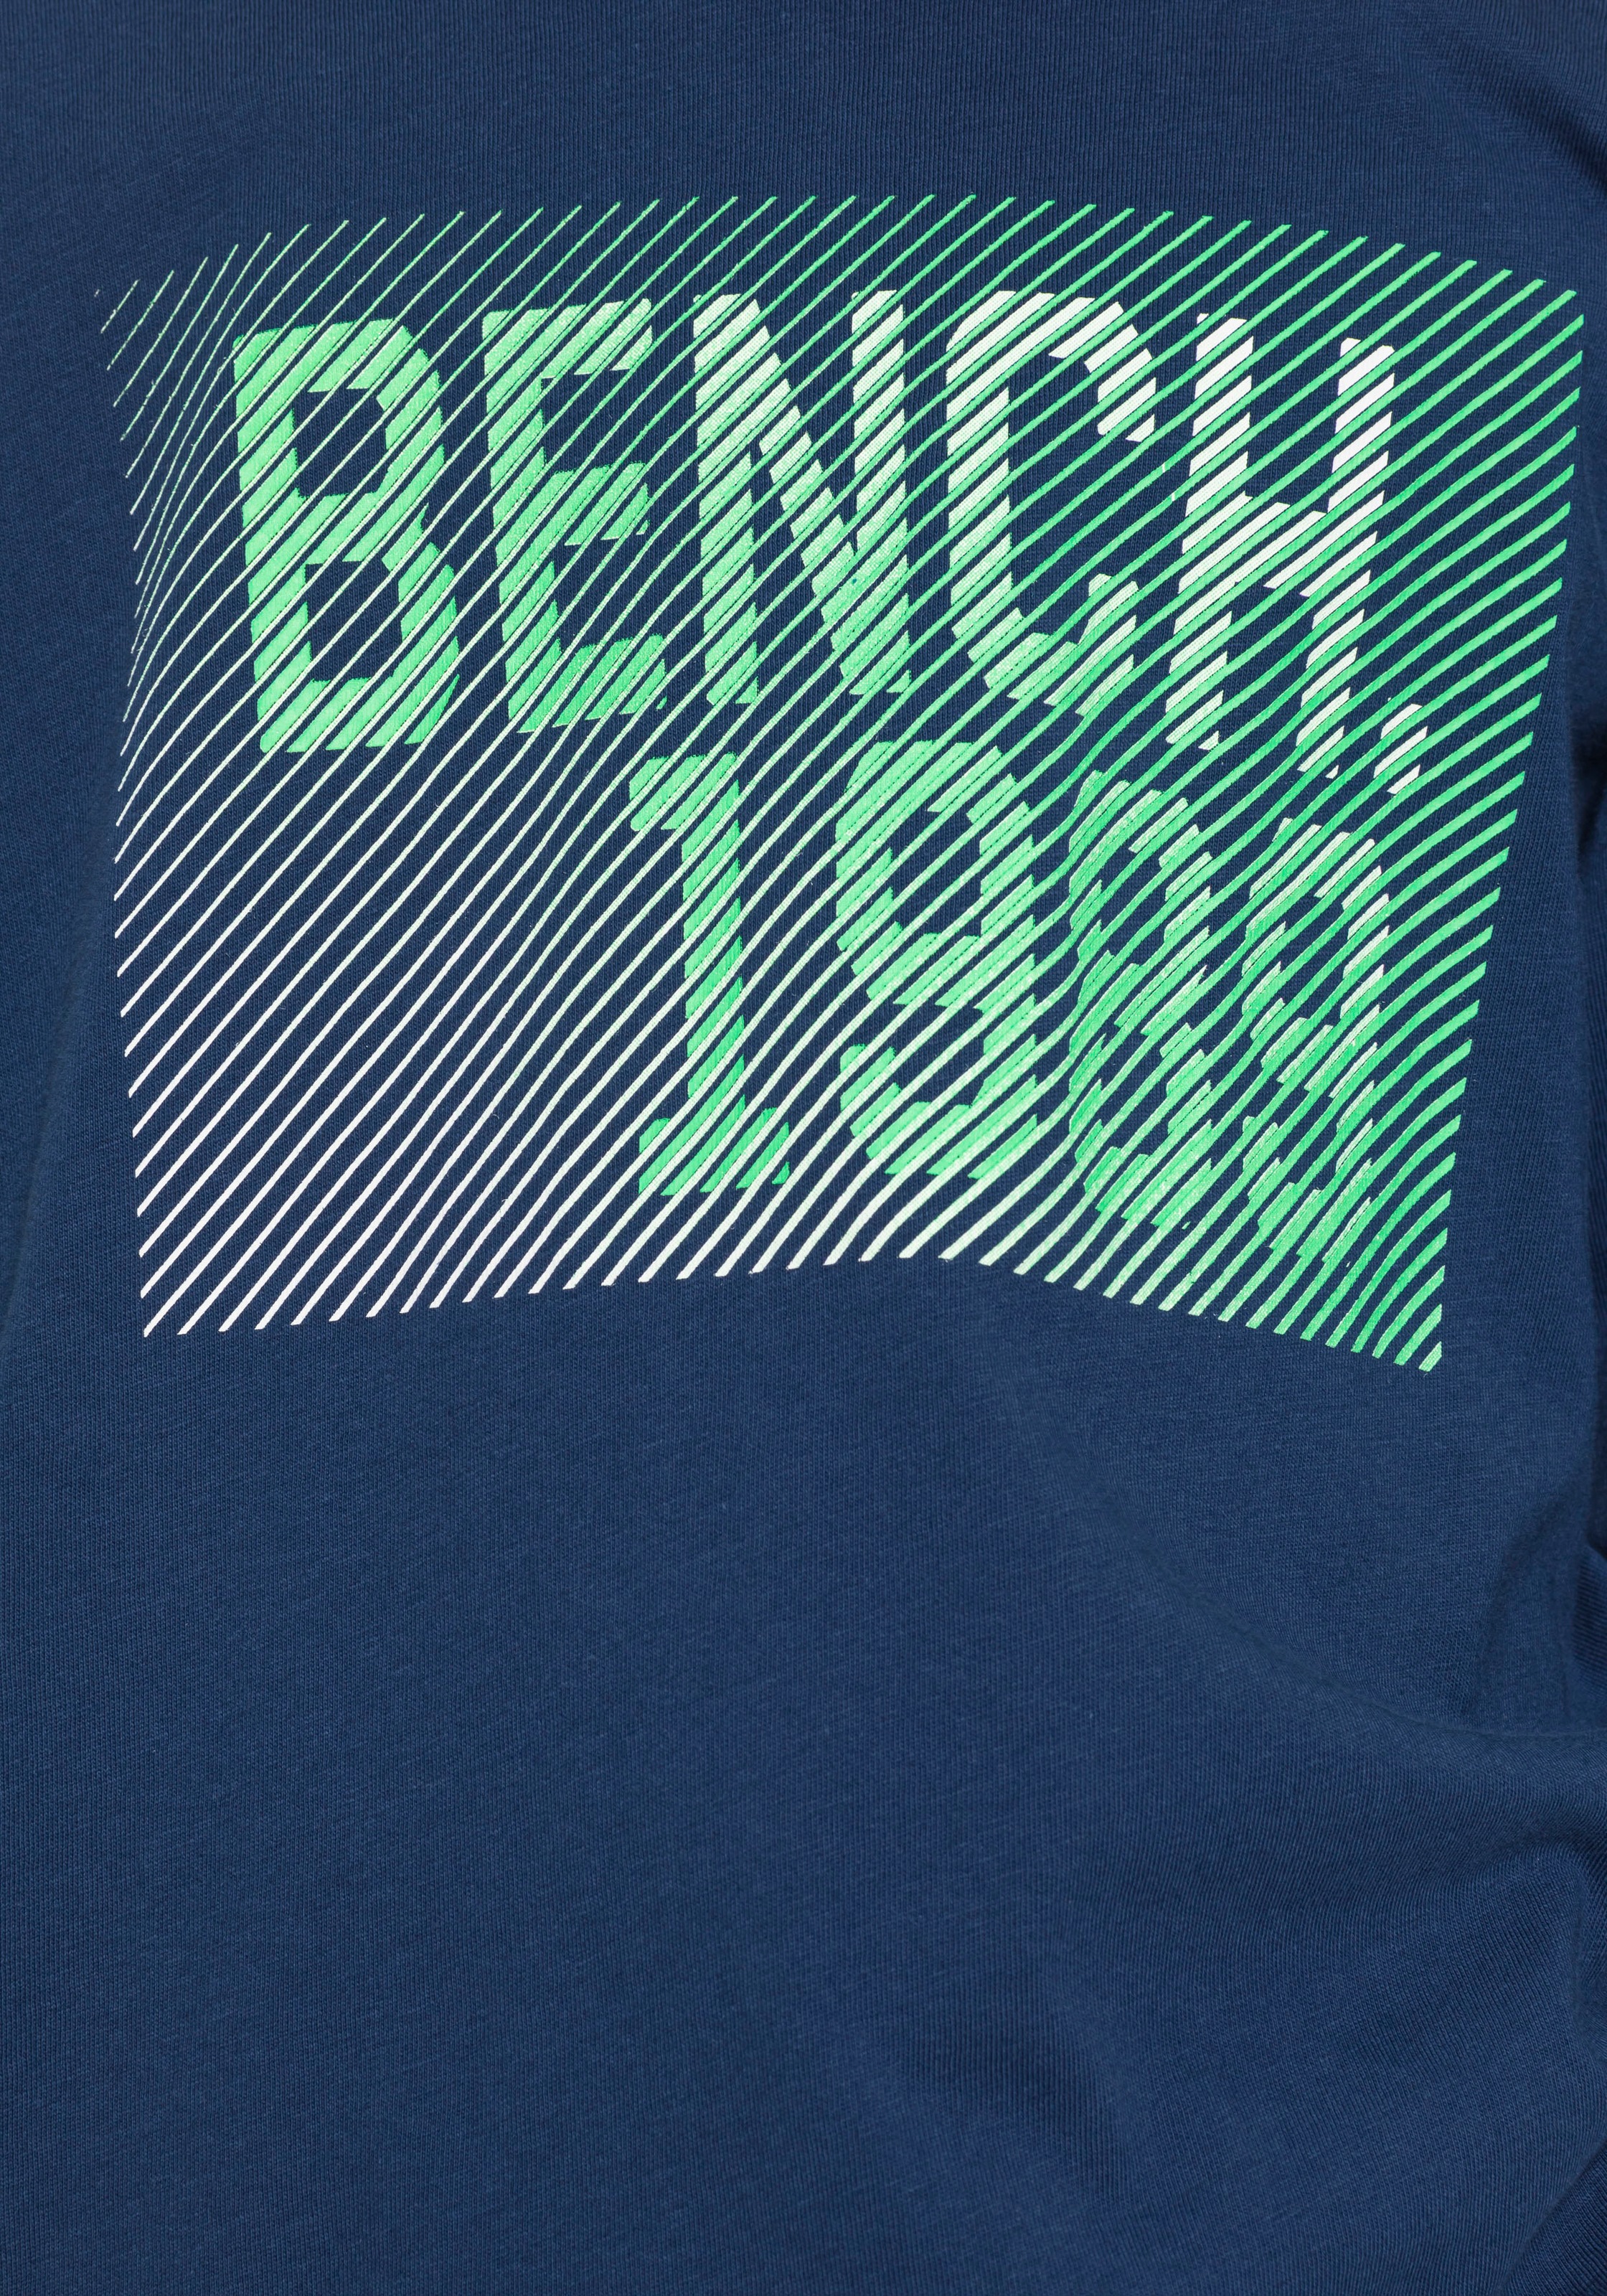 ✌ Bench. Langarmshirt, mit modischem Print Acheter en ligne